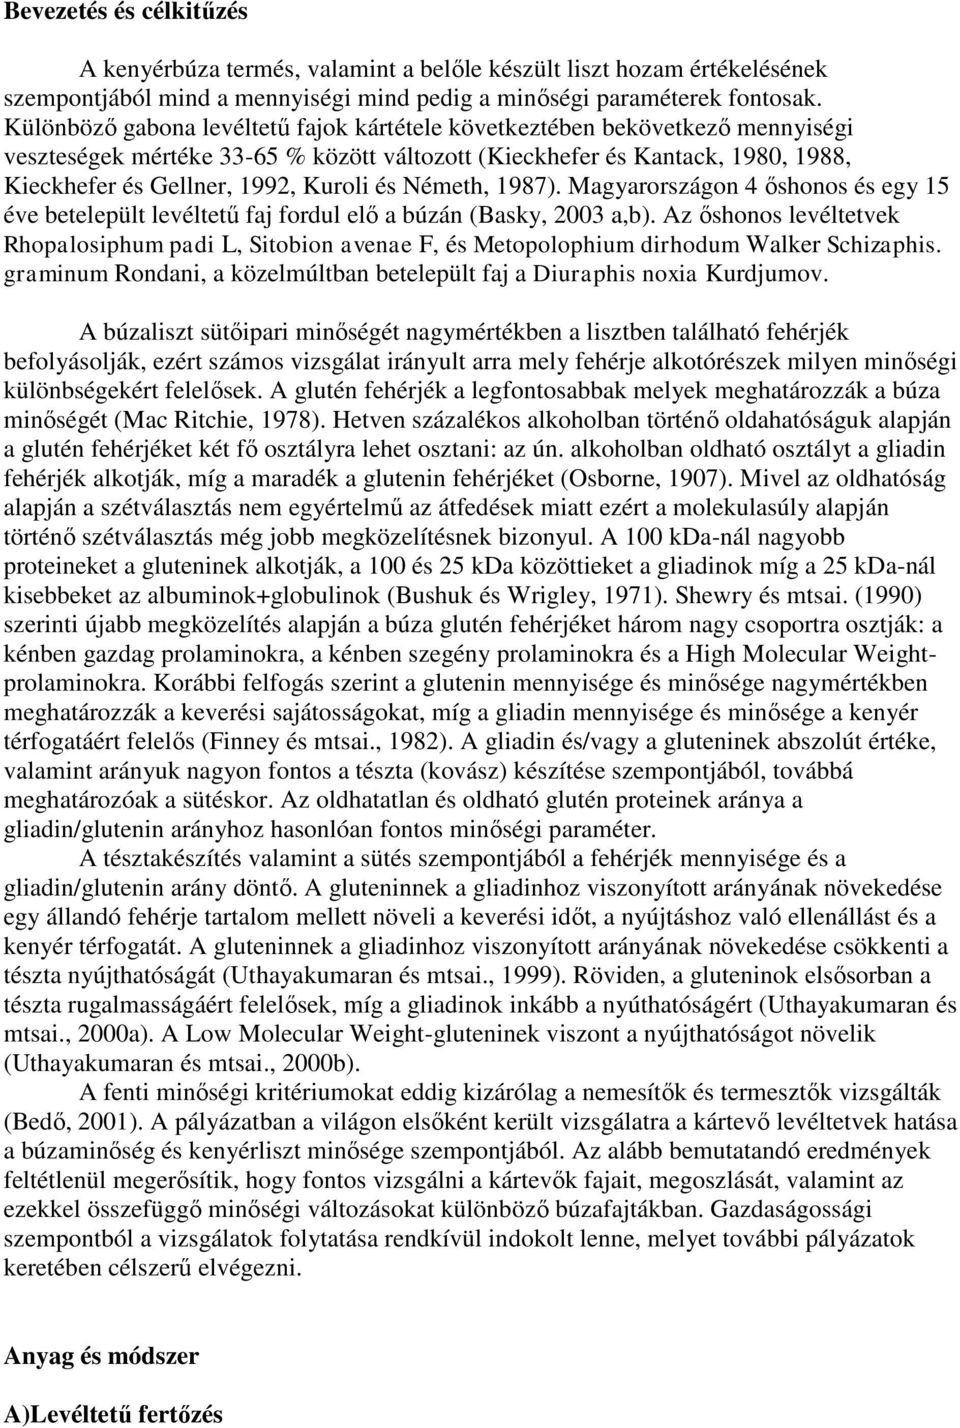 Németh, 1987). Mgyrországon 4 őshonos és egy 15 éve betelepült levéltetű fj fordul elő búzán (Bsky, 2003,b).